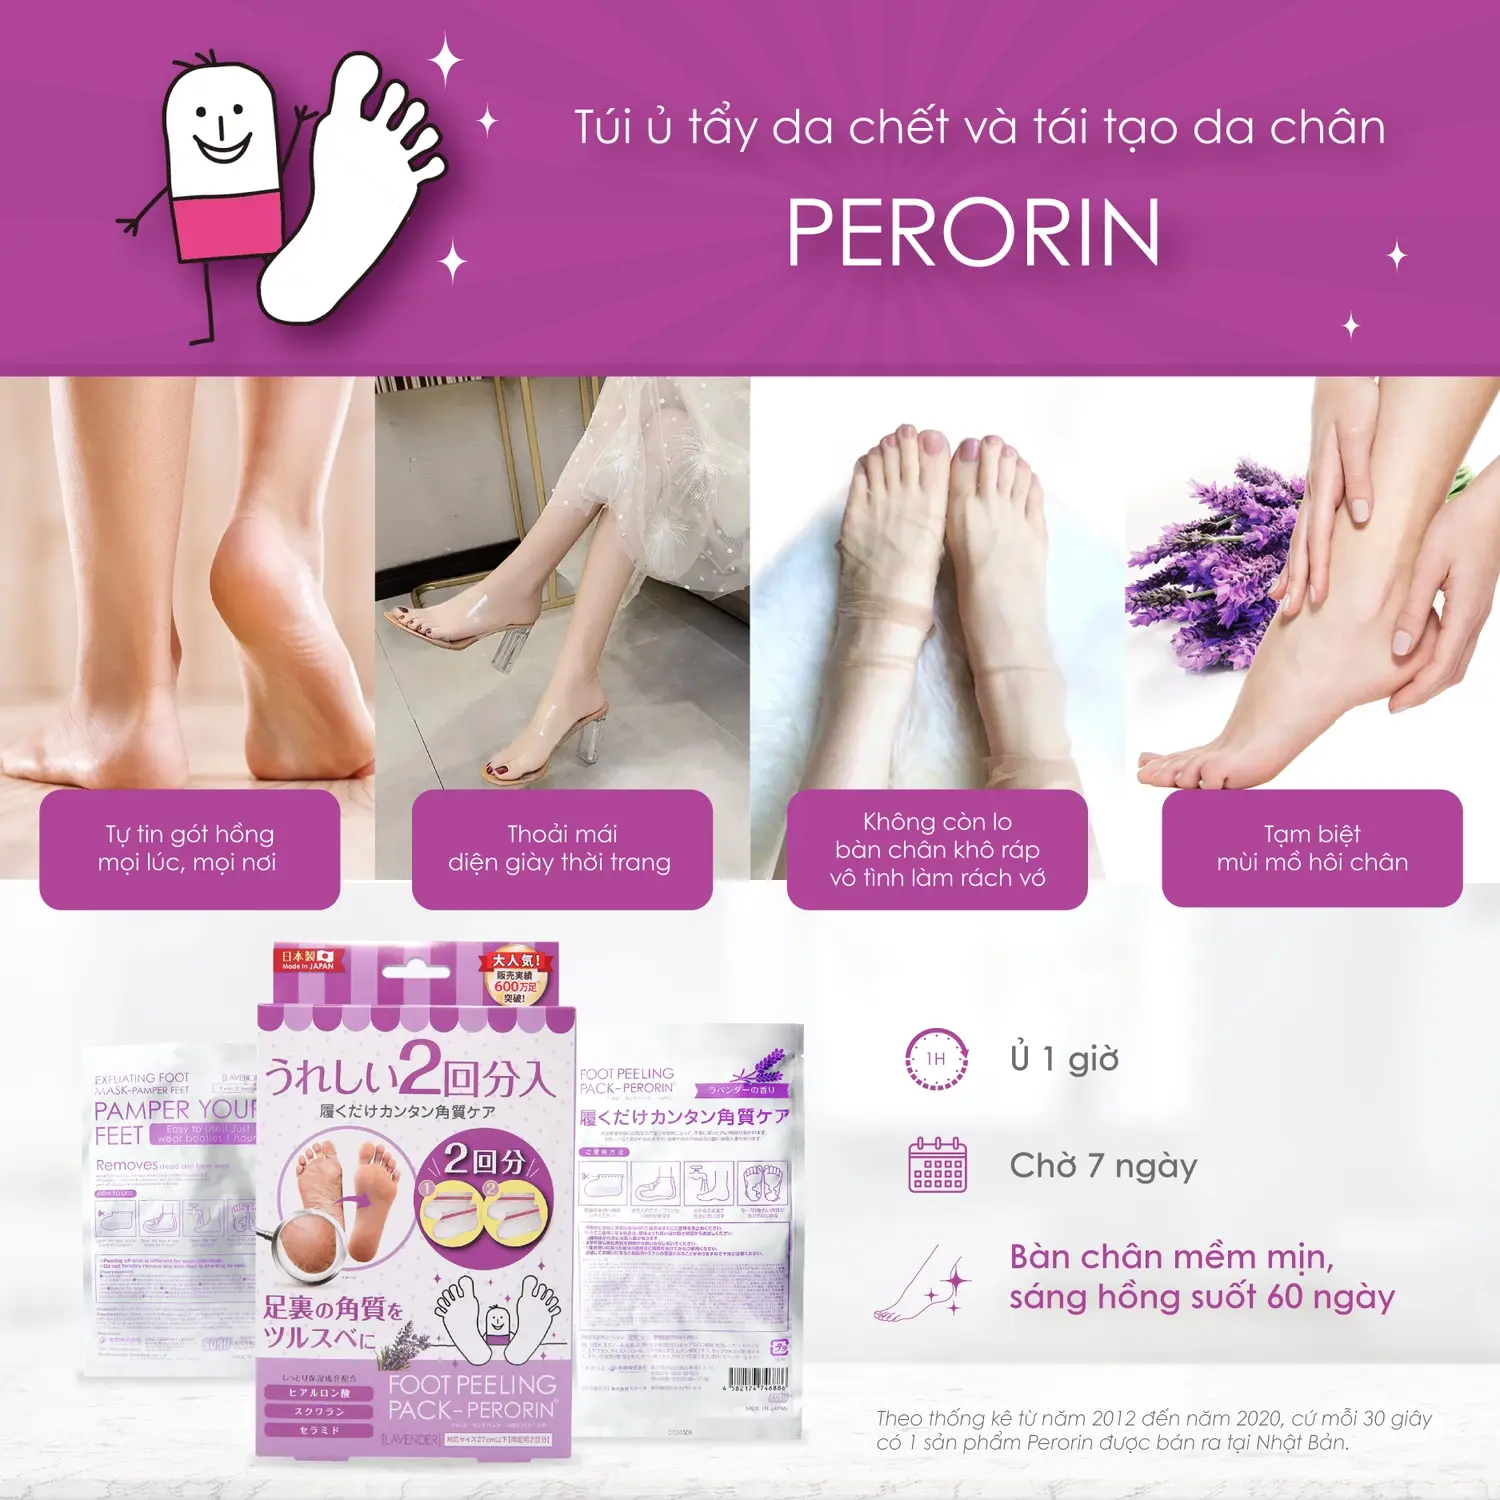 Foot Peeling Pack Perorin hương Lavender chính hãng giá rẻ bàn chân sáng mịn láng hồng suốt 60 ngày - Kuchen Vietnam